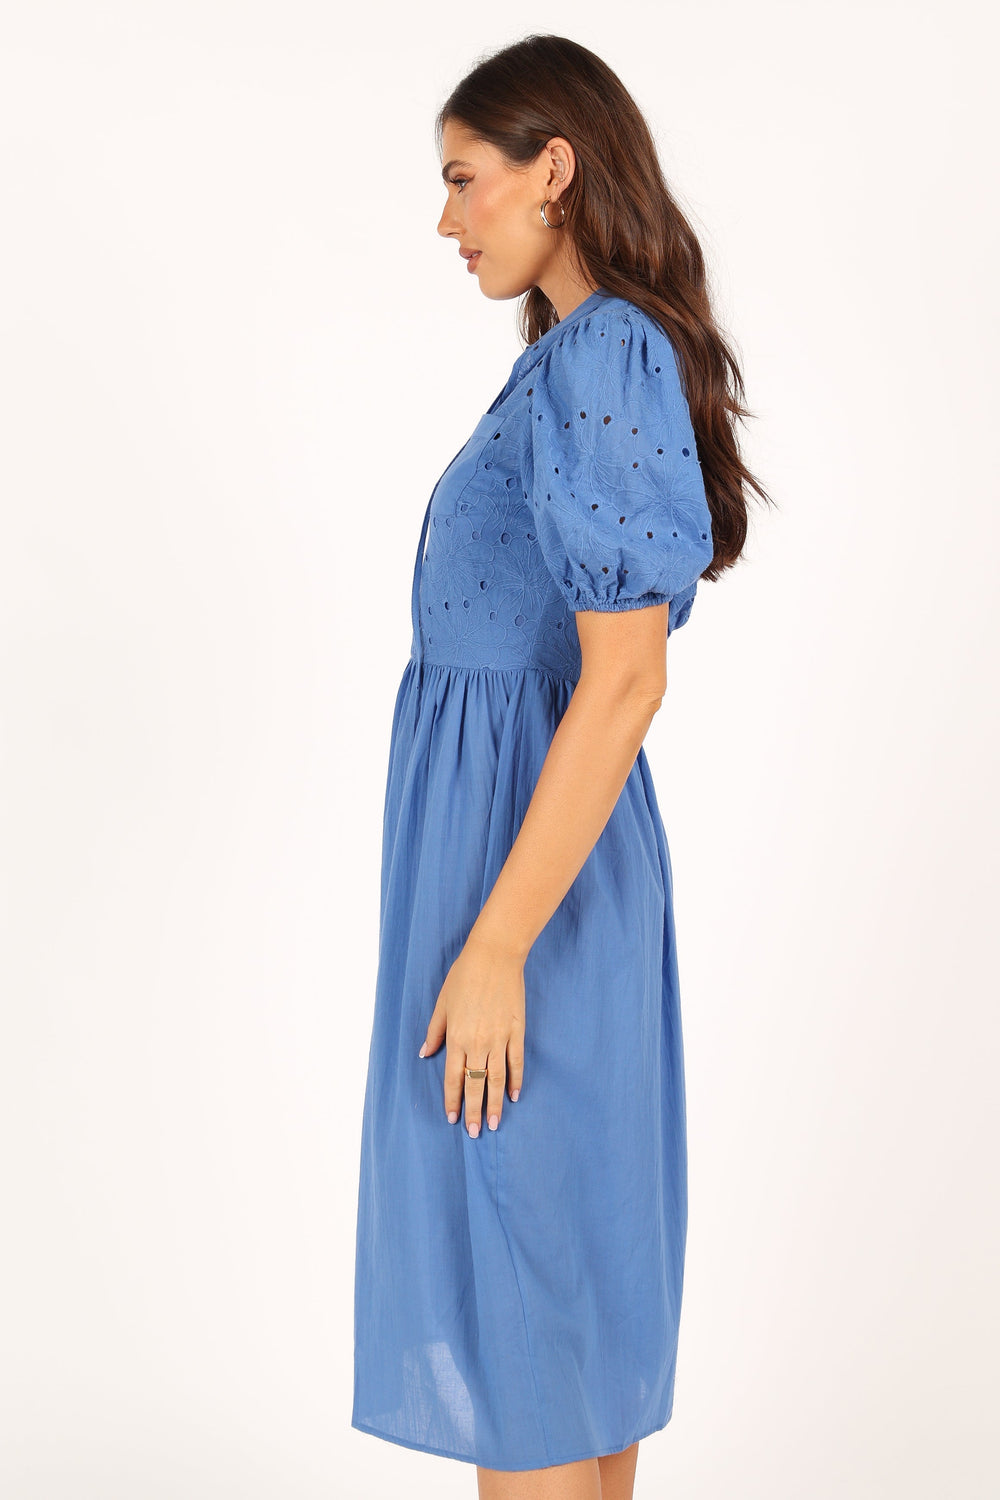 dusty blue midi dress